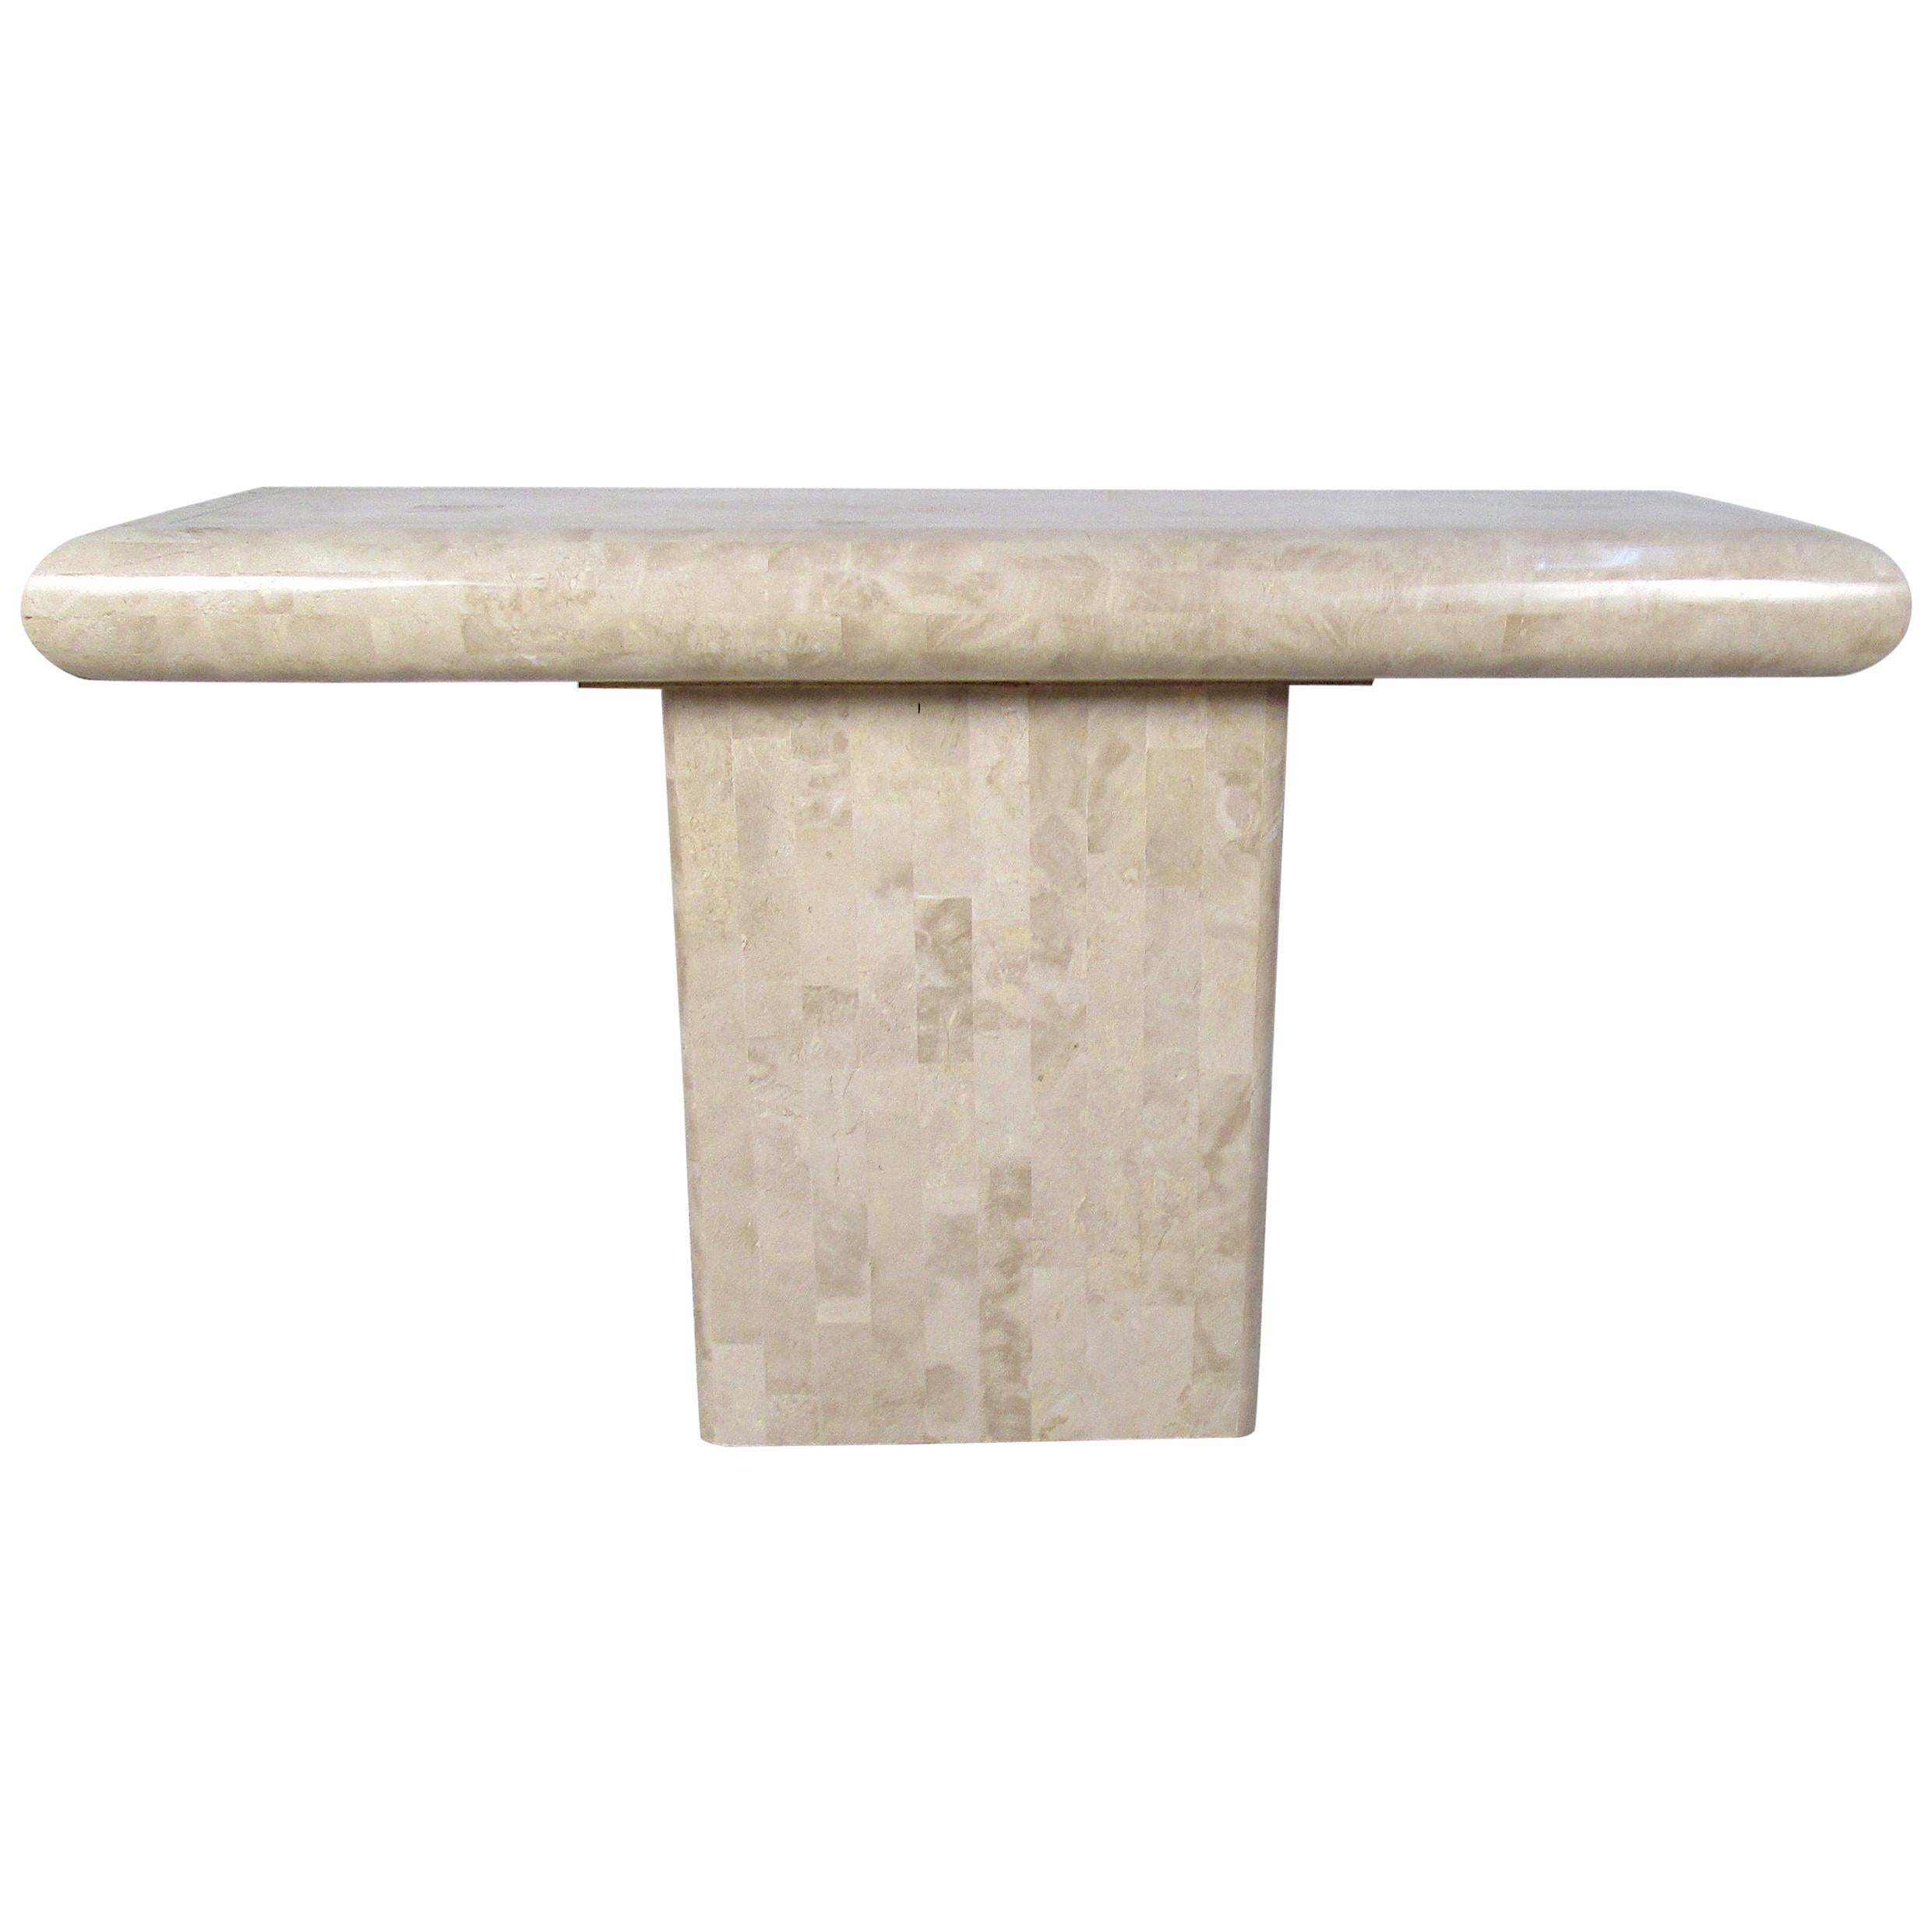 Cette superbe table d'entrée de Maitland Smith est dotée d'un plateau en pierre tessellée et d'une base à piédestal. Un design élégant qui fait merveille derrière le canapé, dans le couloir ou même dans l'entrée. De magnifiques bords biseautés le